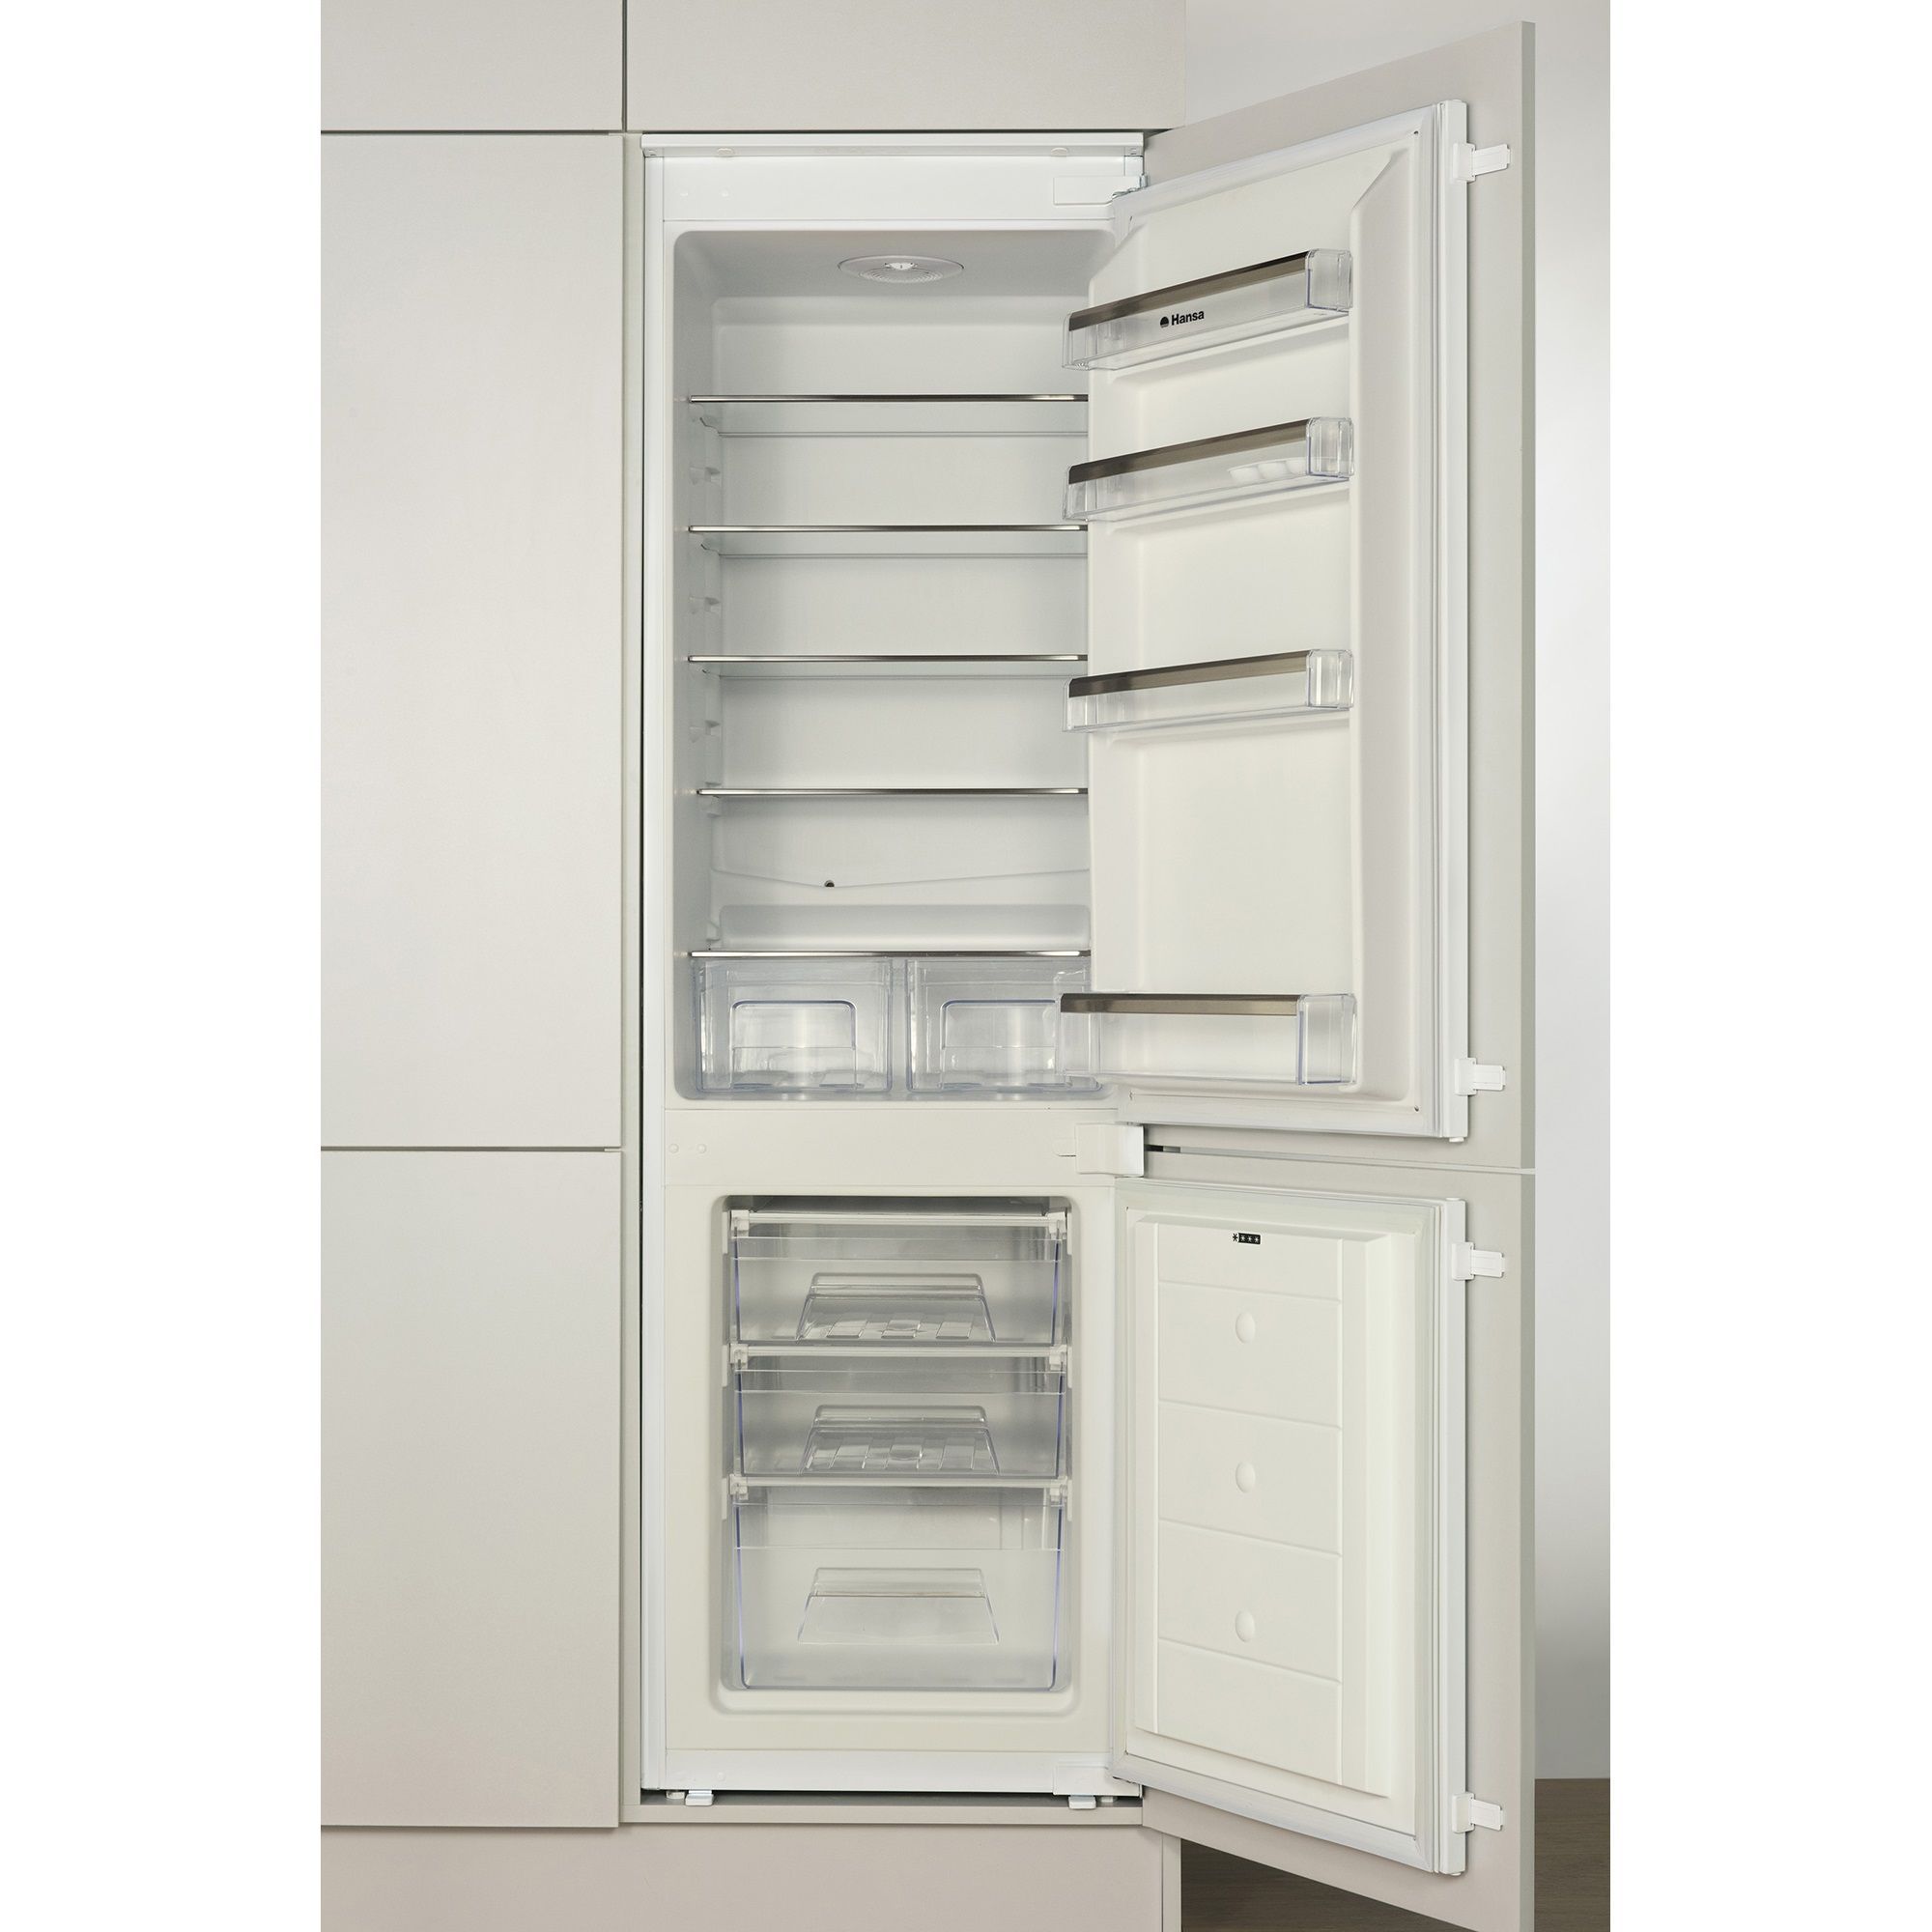 Холодильник встр. HANSA BK316.3(1170446)